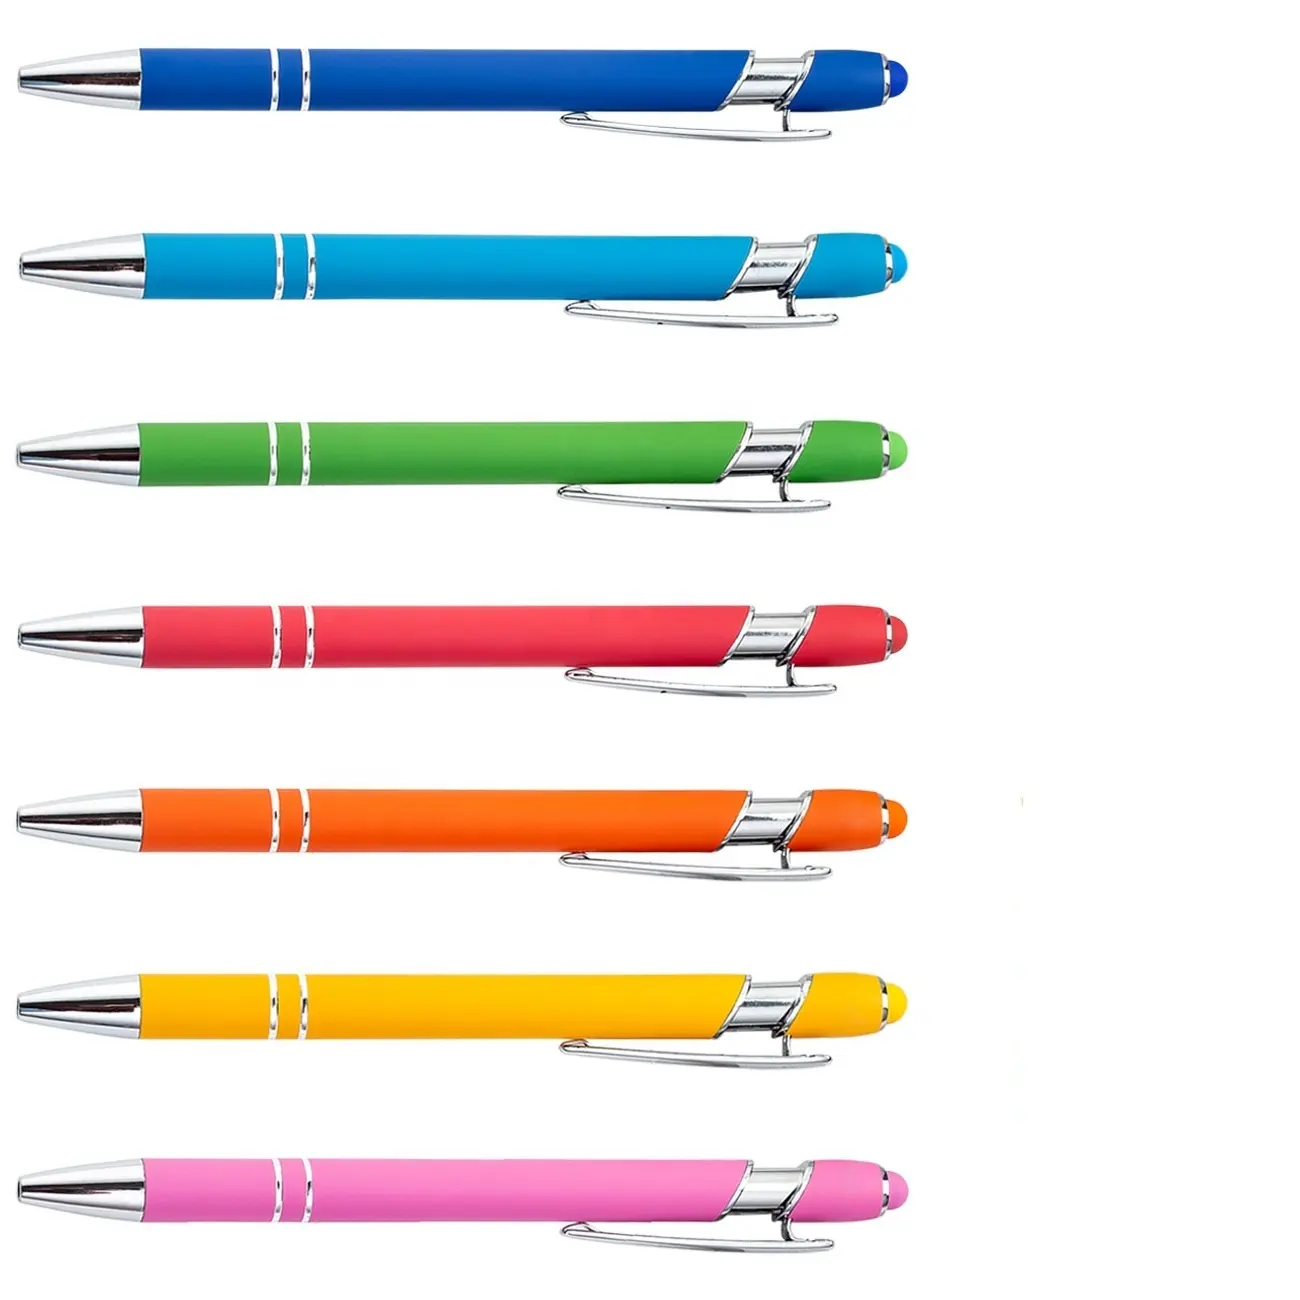 Dokunmatik ekranlar için stylus alüminyum metal kalem stylus ile promosyon amerikan tükenmez kalem lastik tükenmez kalem